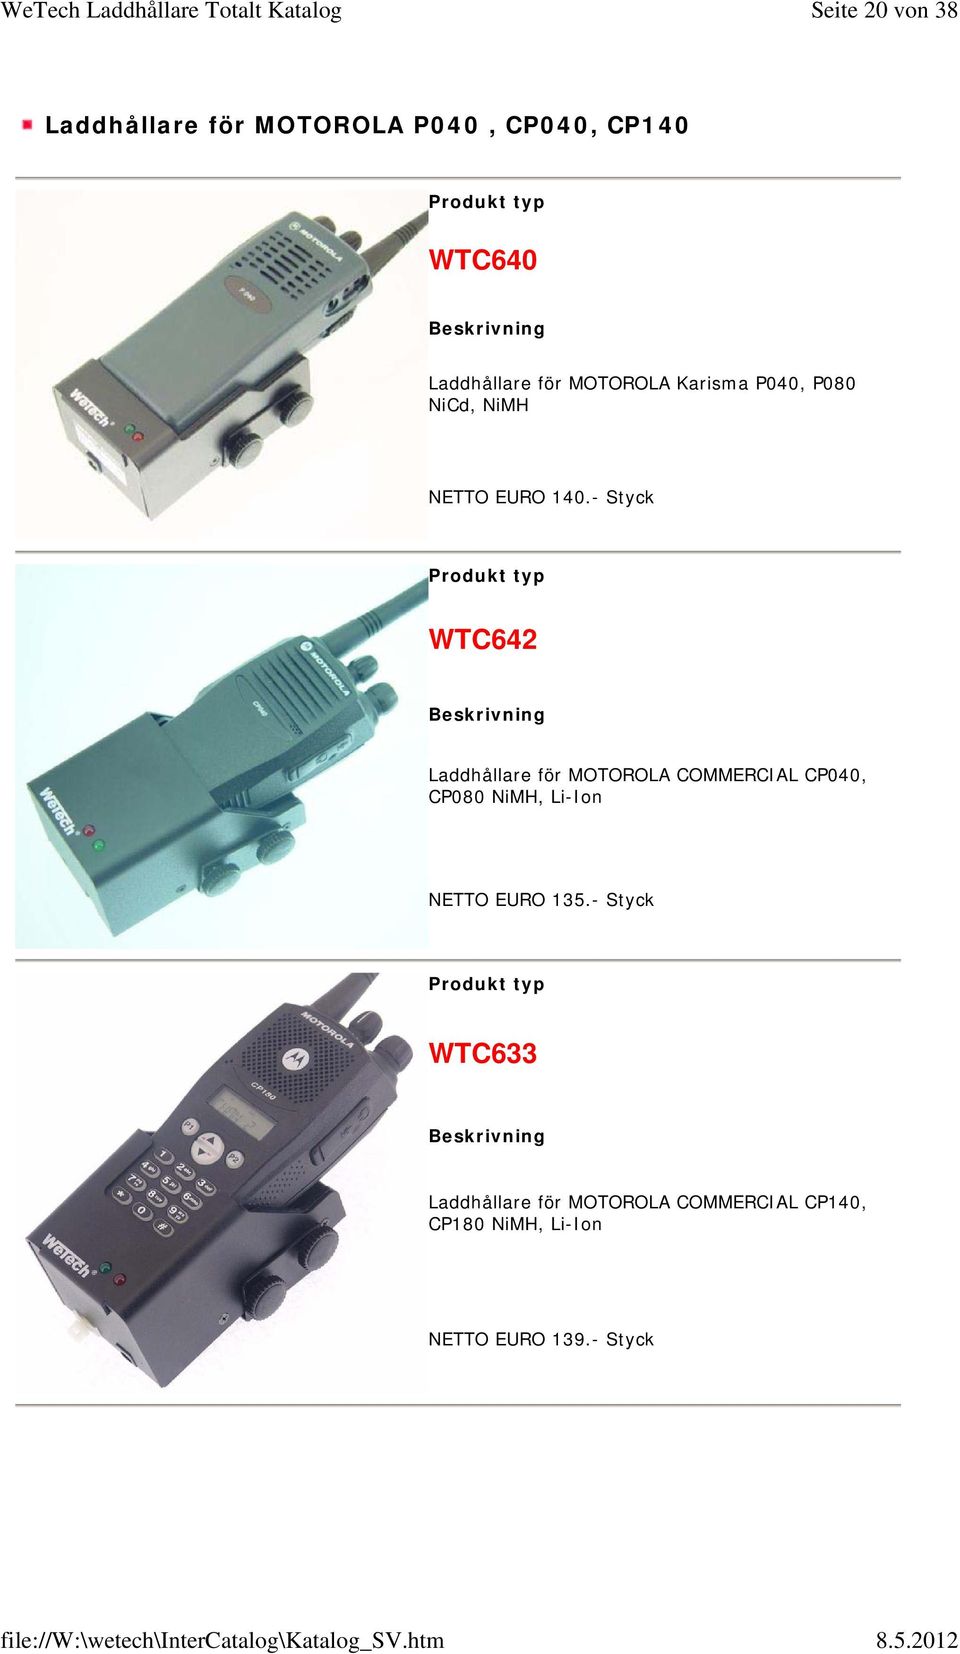 - Styck WTC642 Laddhållare för MOTOROLA COMMERCIAL CP040, CP080 NiMH, Li-Ion